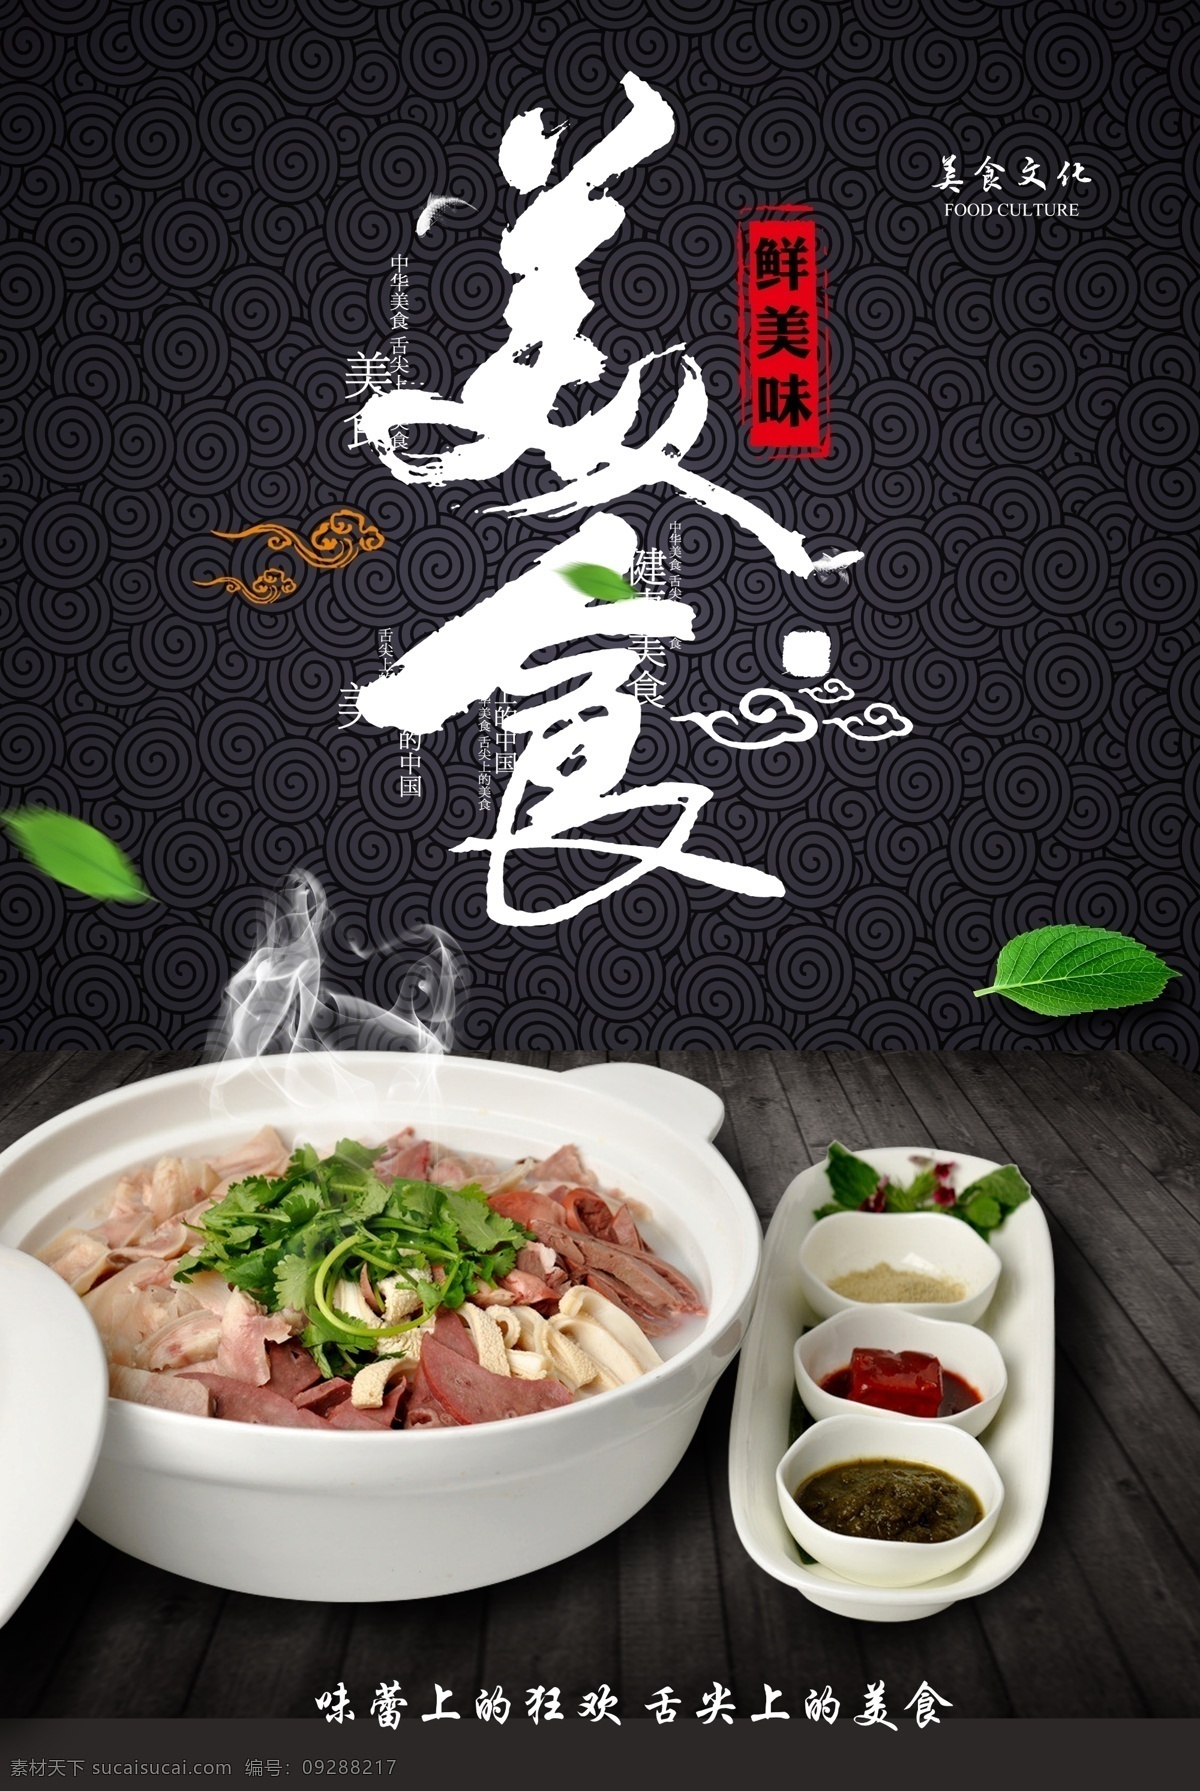 牛 杂 汤 传统 美食 海报 传统美食海报 psd素材 传统文化 牛杂汤 中华美食 分层